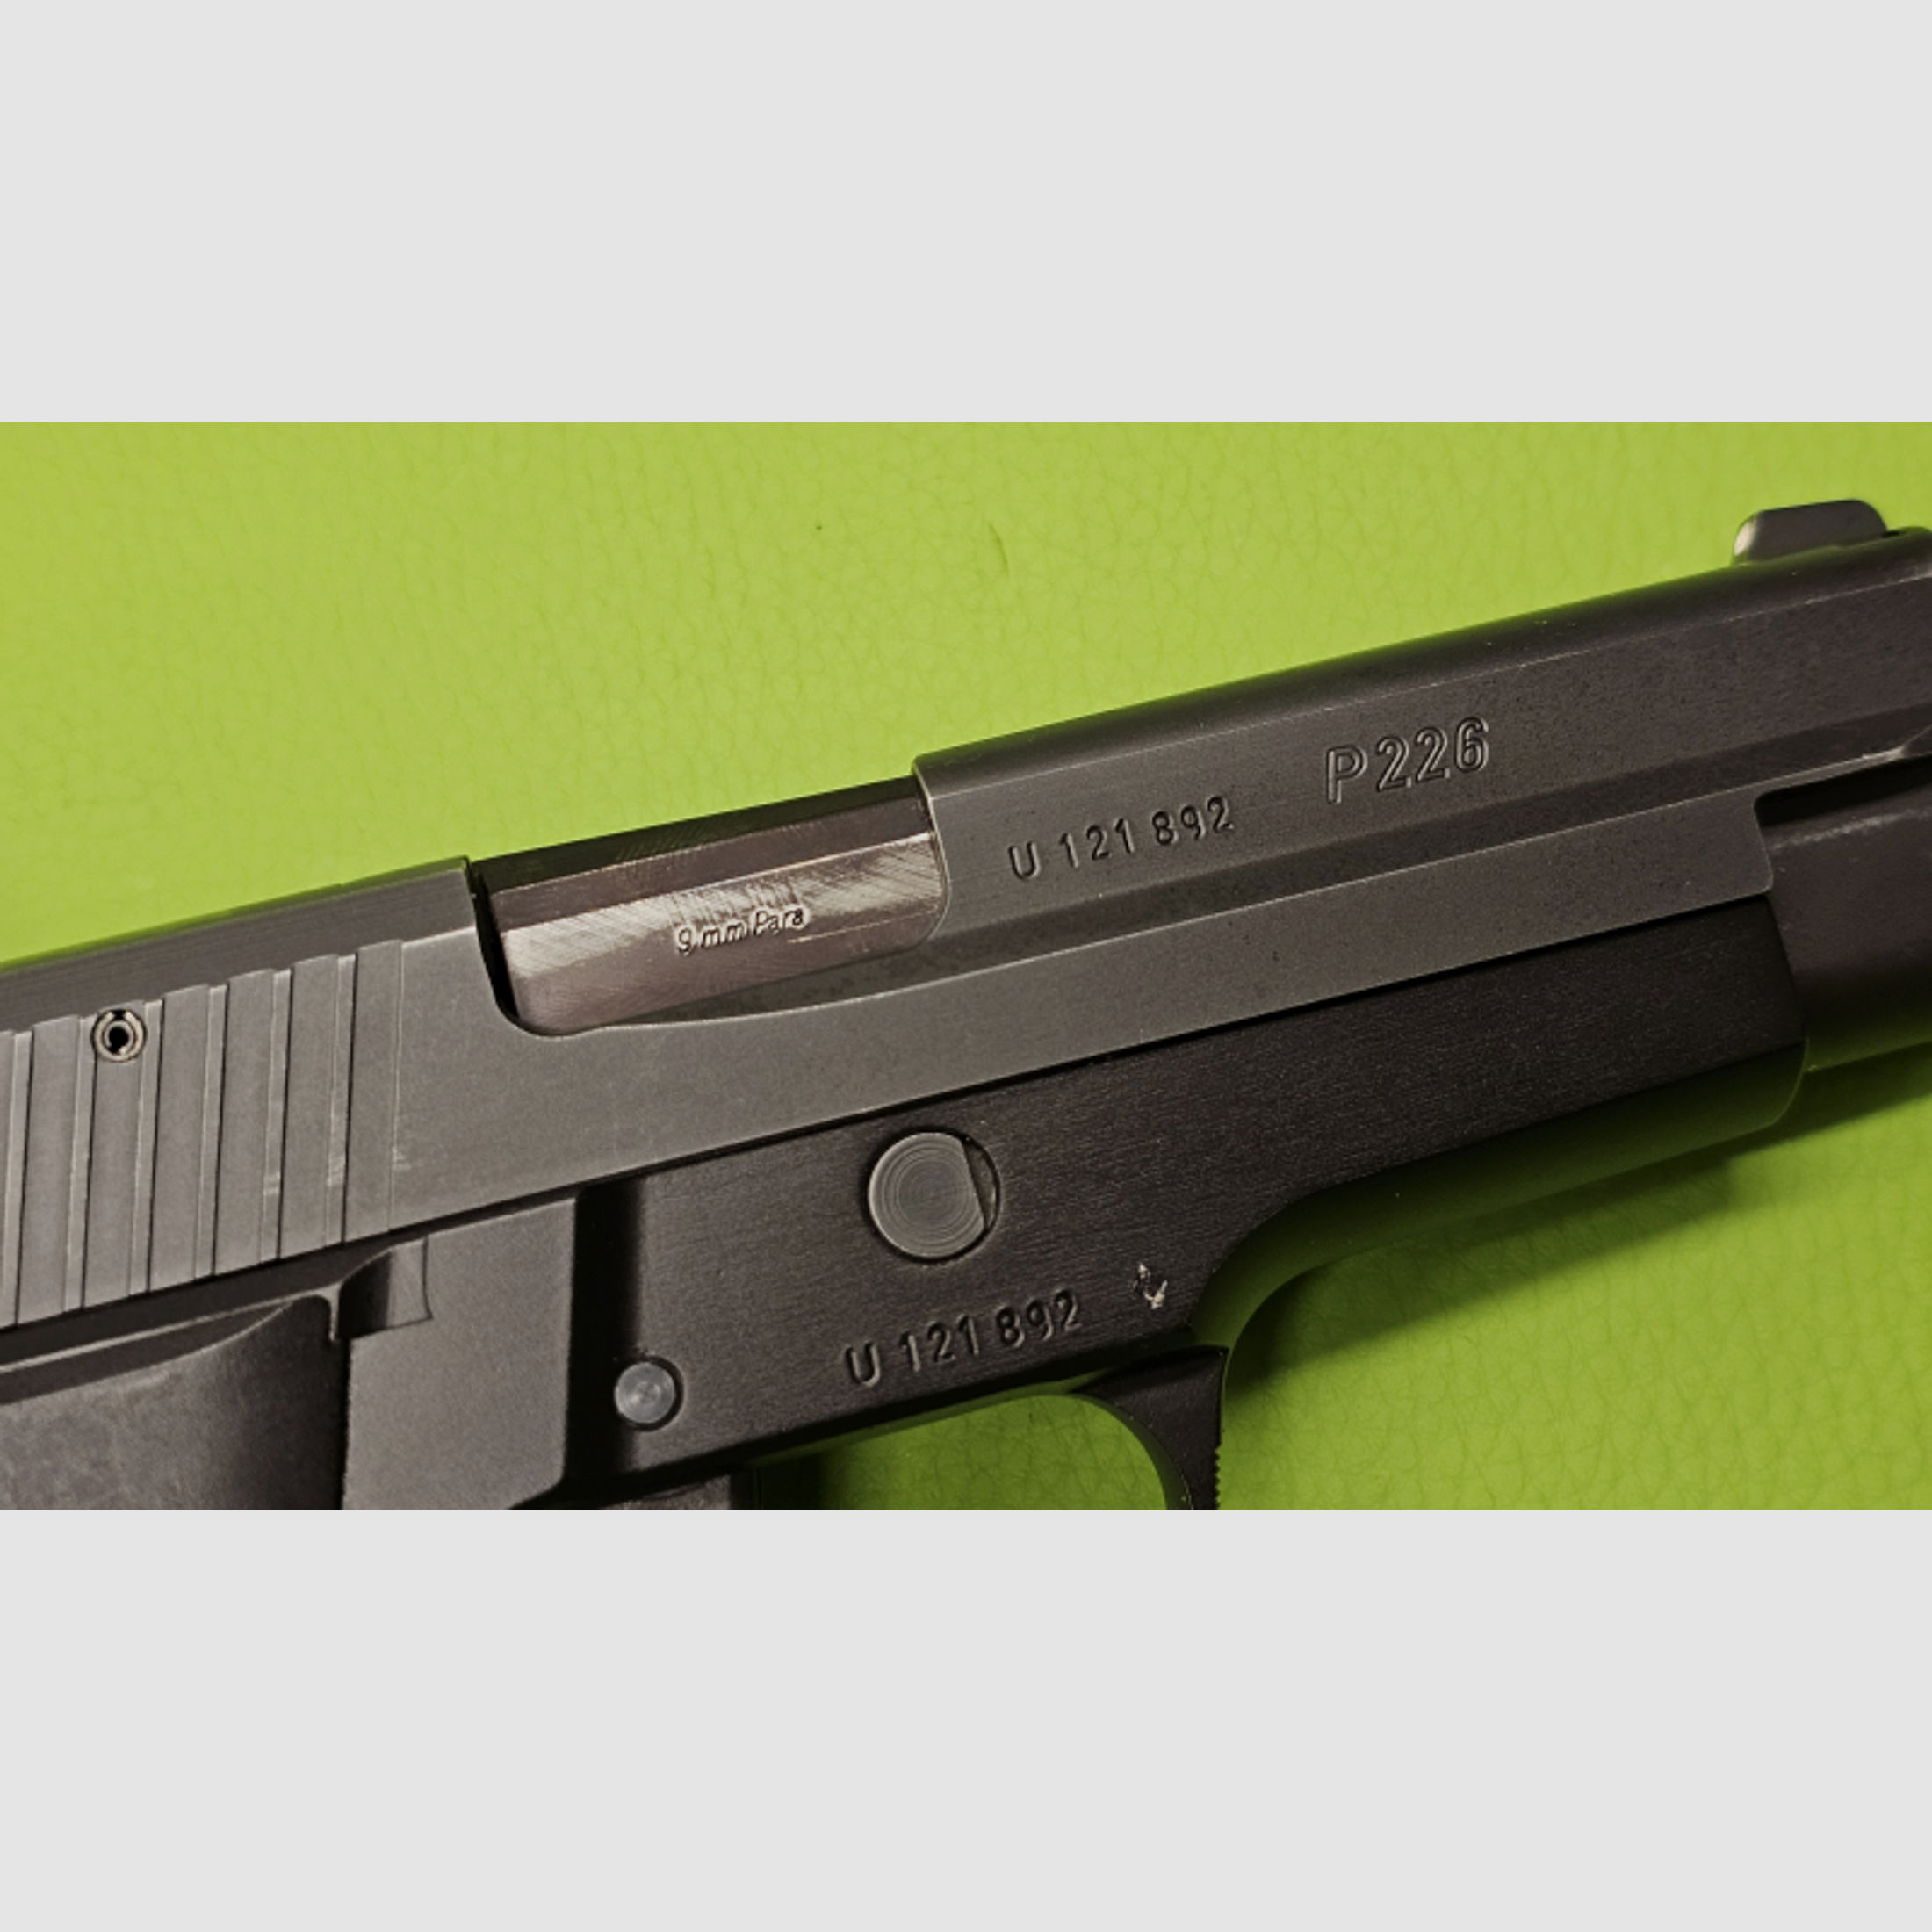 Pistole SIG Sauer P226 von 1984 / Kaliber 9mmLuger / frühes Modell! / SAMMLER